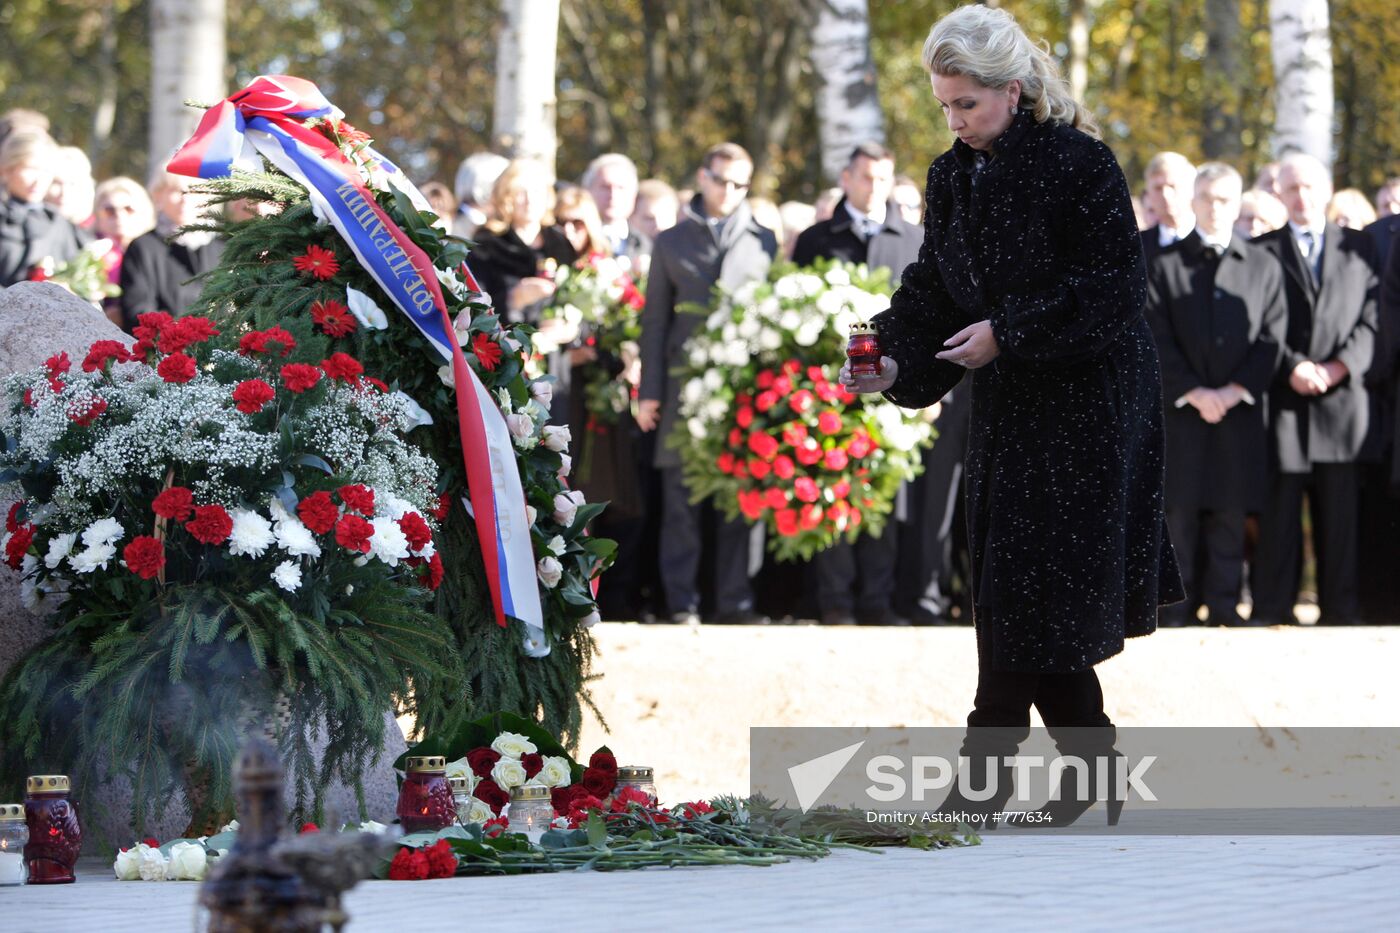 Svetlana Medvedeva attends memorial events in Smolensk